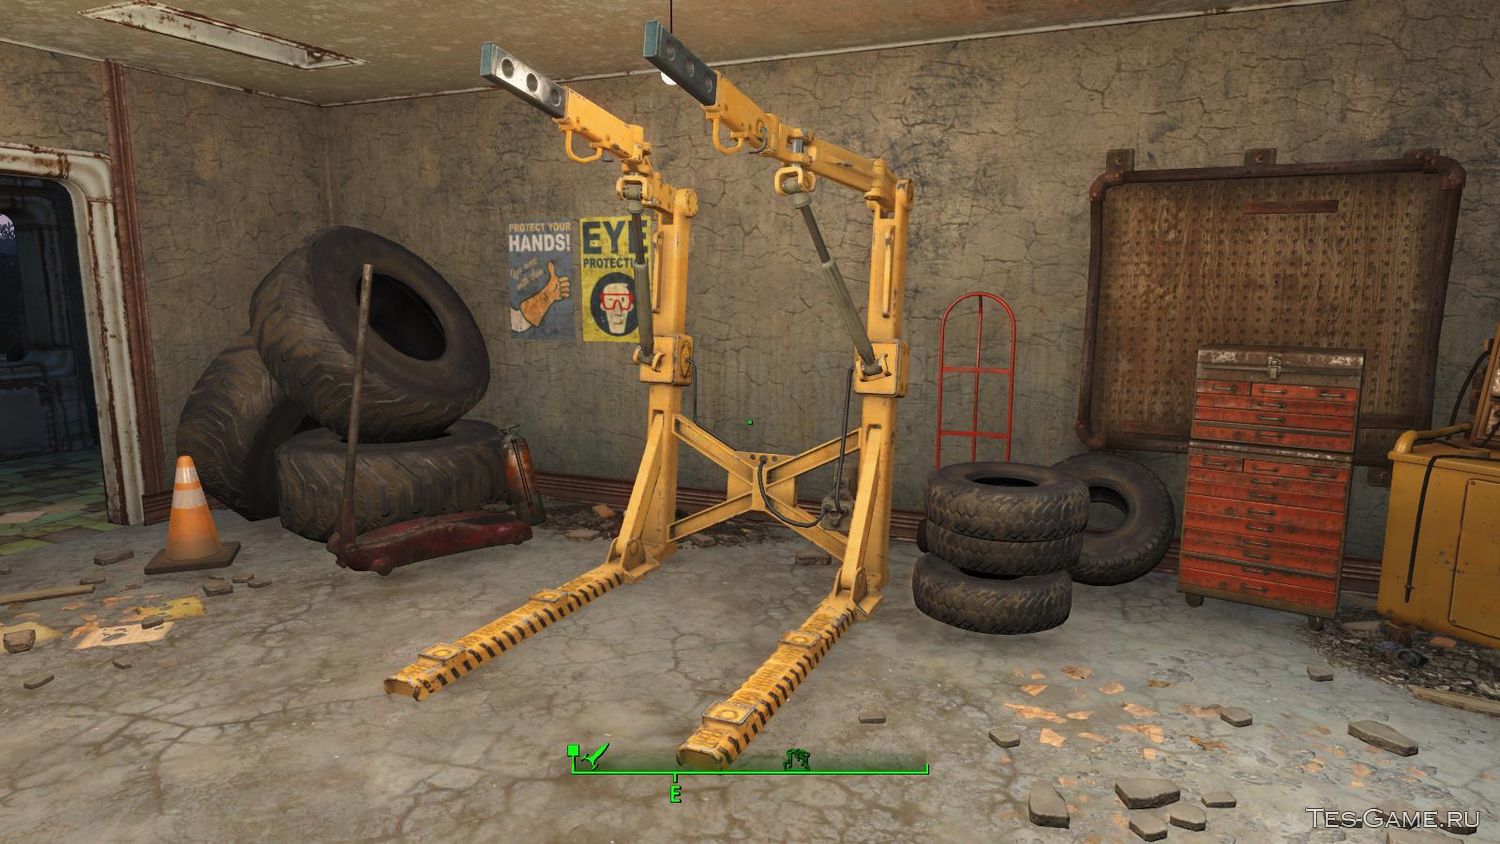 Fallout 4 верстак для роботов не ставится фото 114